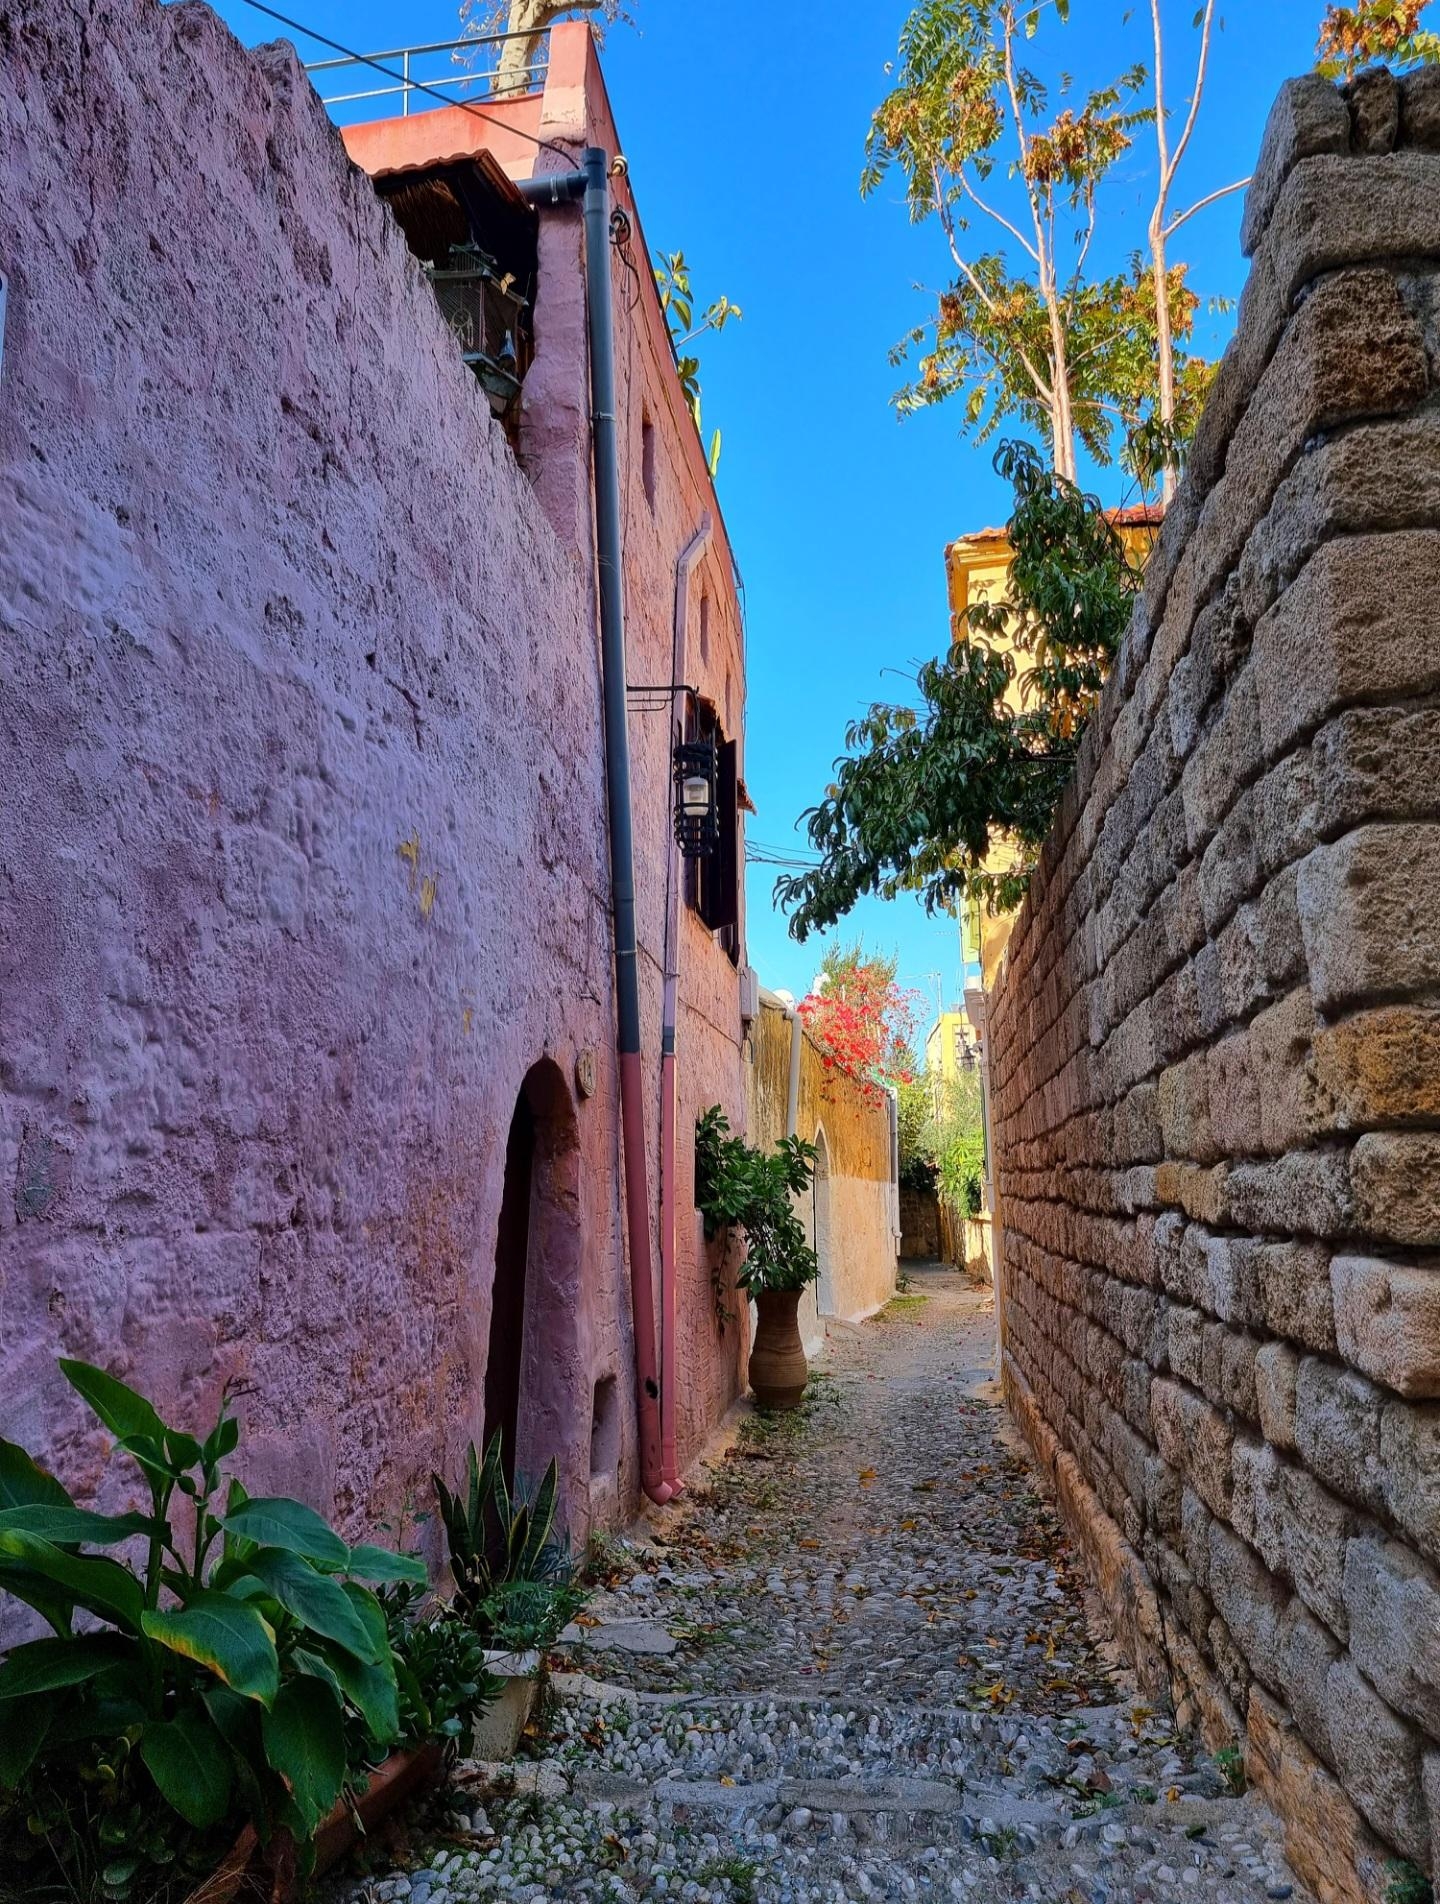 Ich träume vom #Urlaub ☀️ #Rhodos #Altstadt #Altbau #colorfulhome #vintagelove #Sommerkind #Farbenliebe 